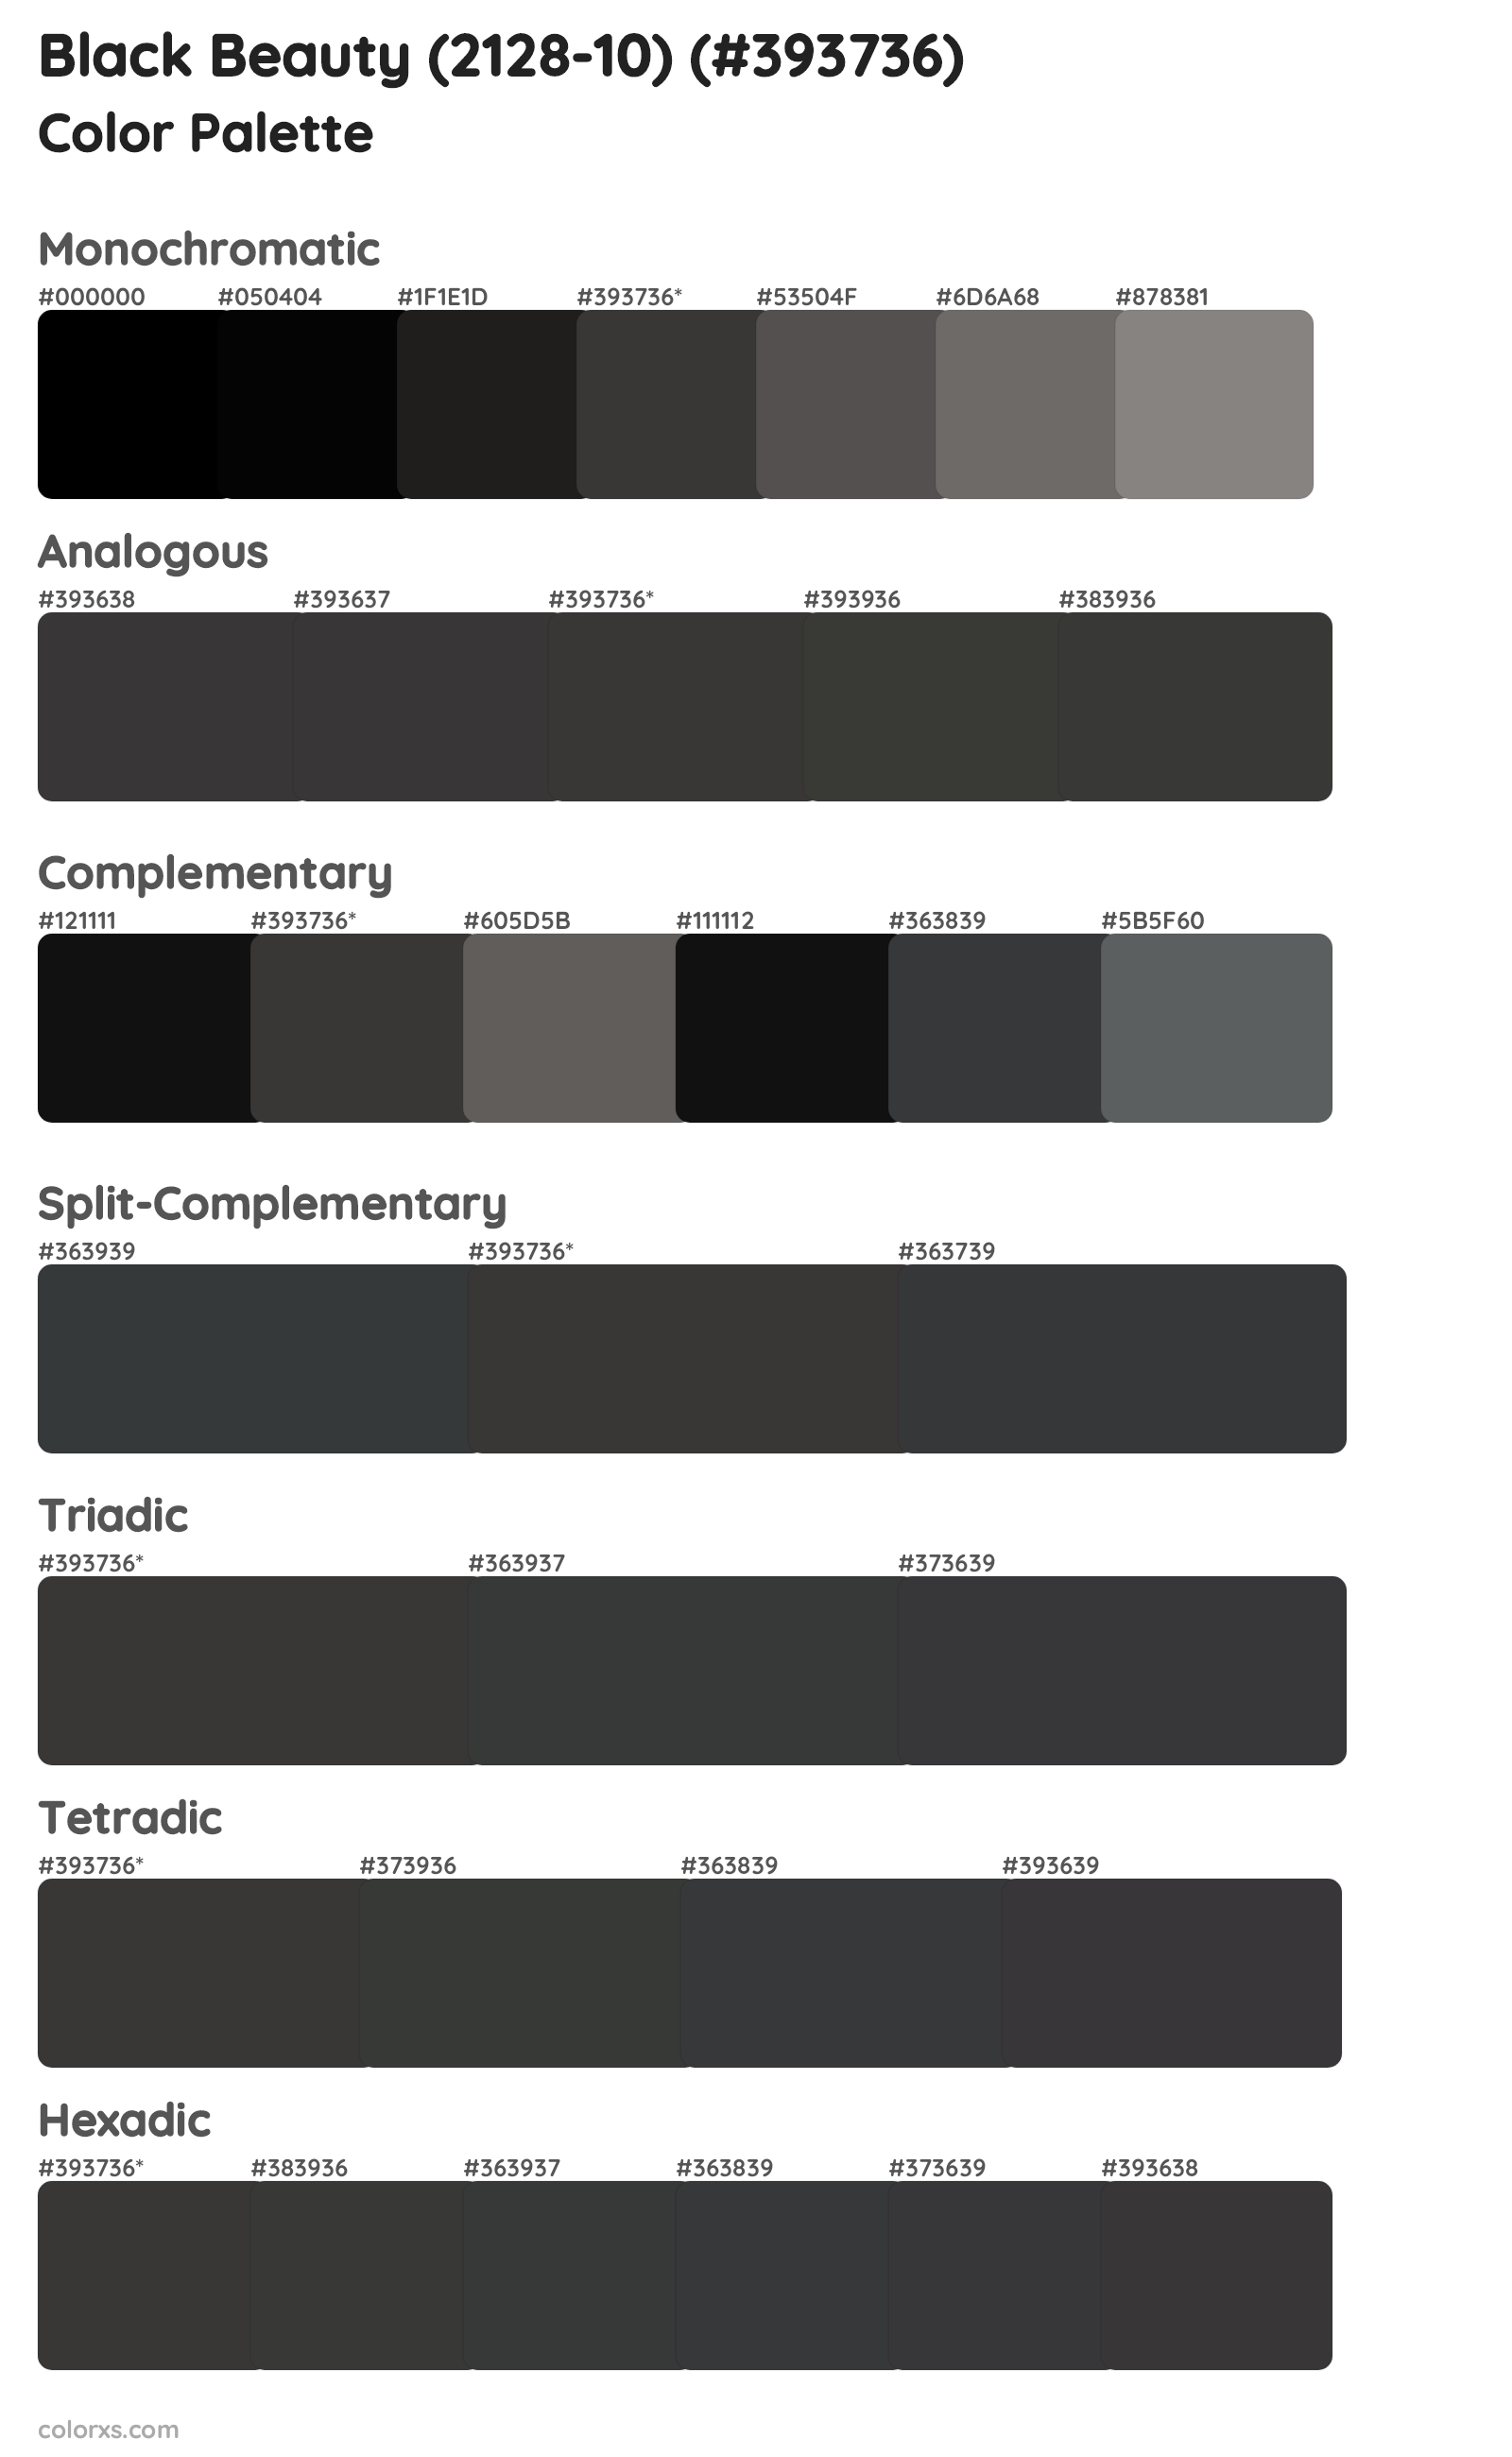 Black Beauty (2128-10) Color Scheme Palettes